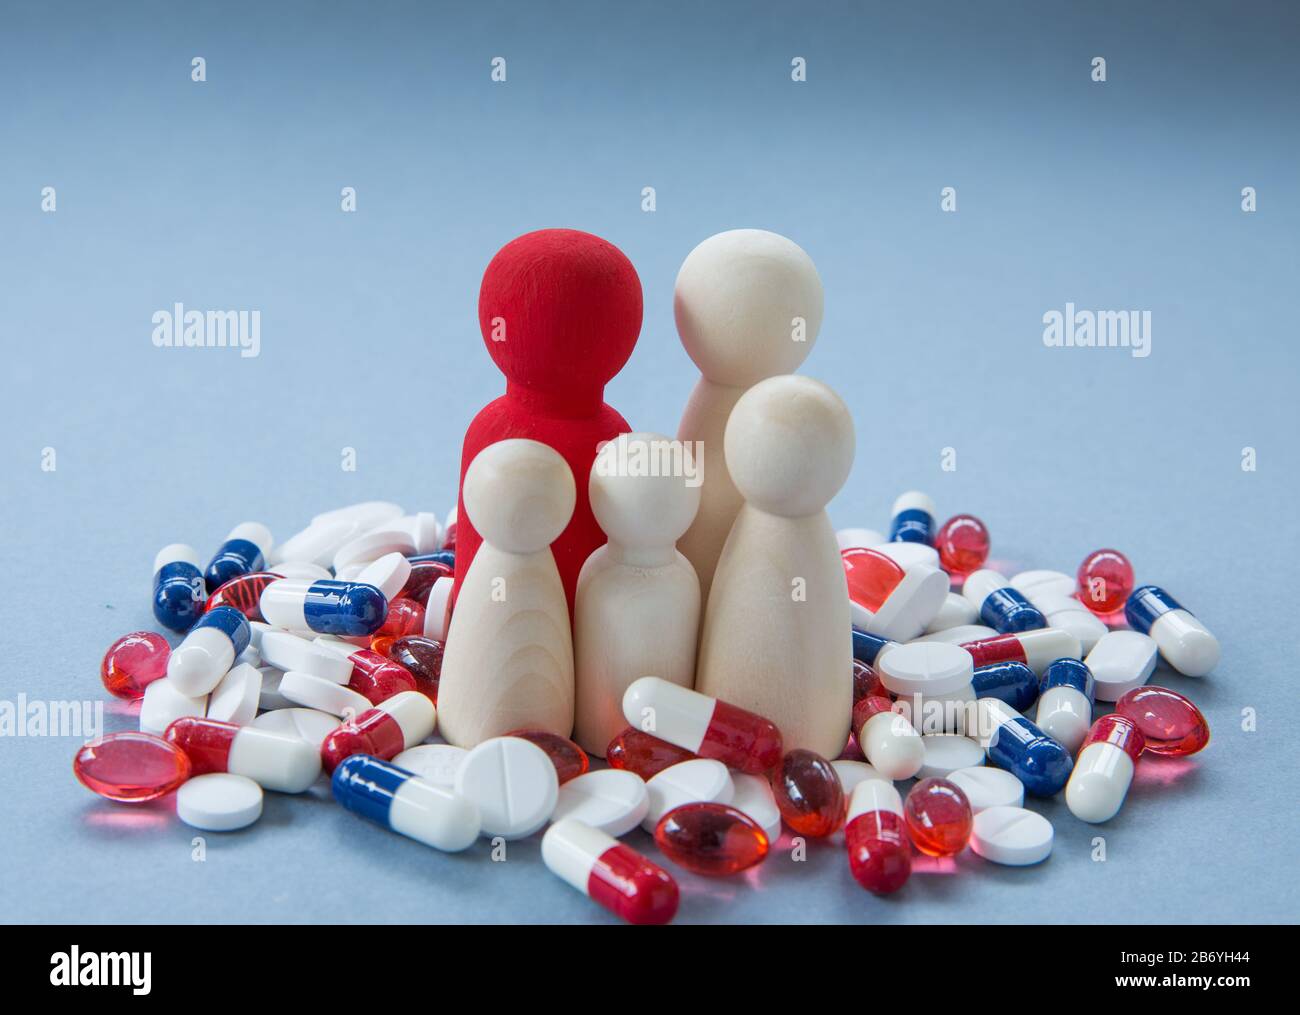 Ein Konzept des Missbrauchs und des Überkonsums von Pillen, Tabletten und Medikamenten wie Antibiotika, Paracetamol und Schmerzmitteln, das antibiotikaresistente Medikamente erlaubt Stockfoto